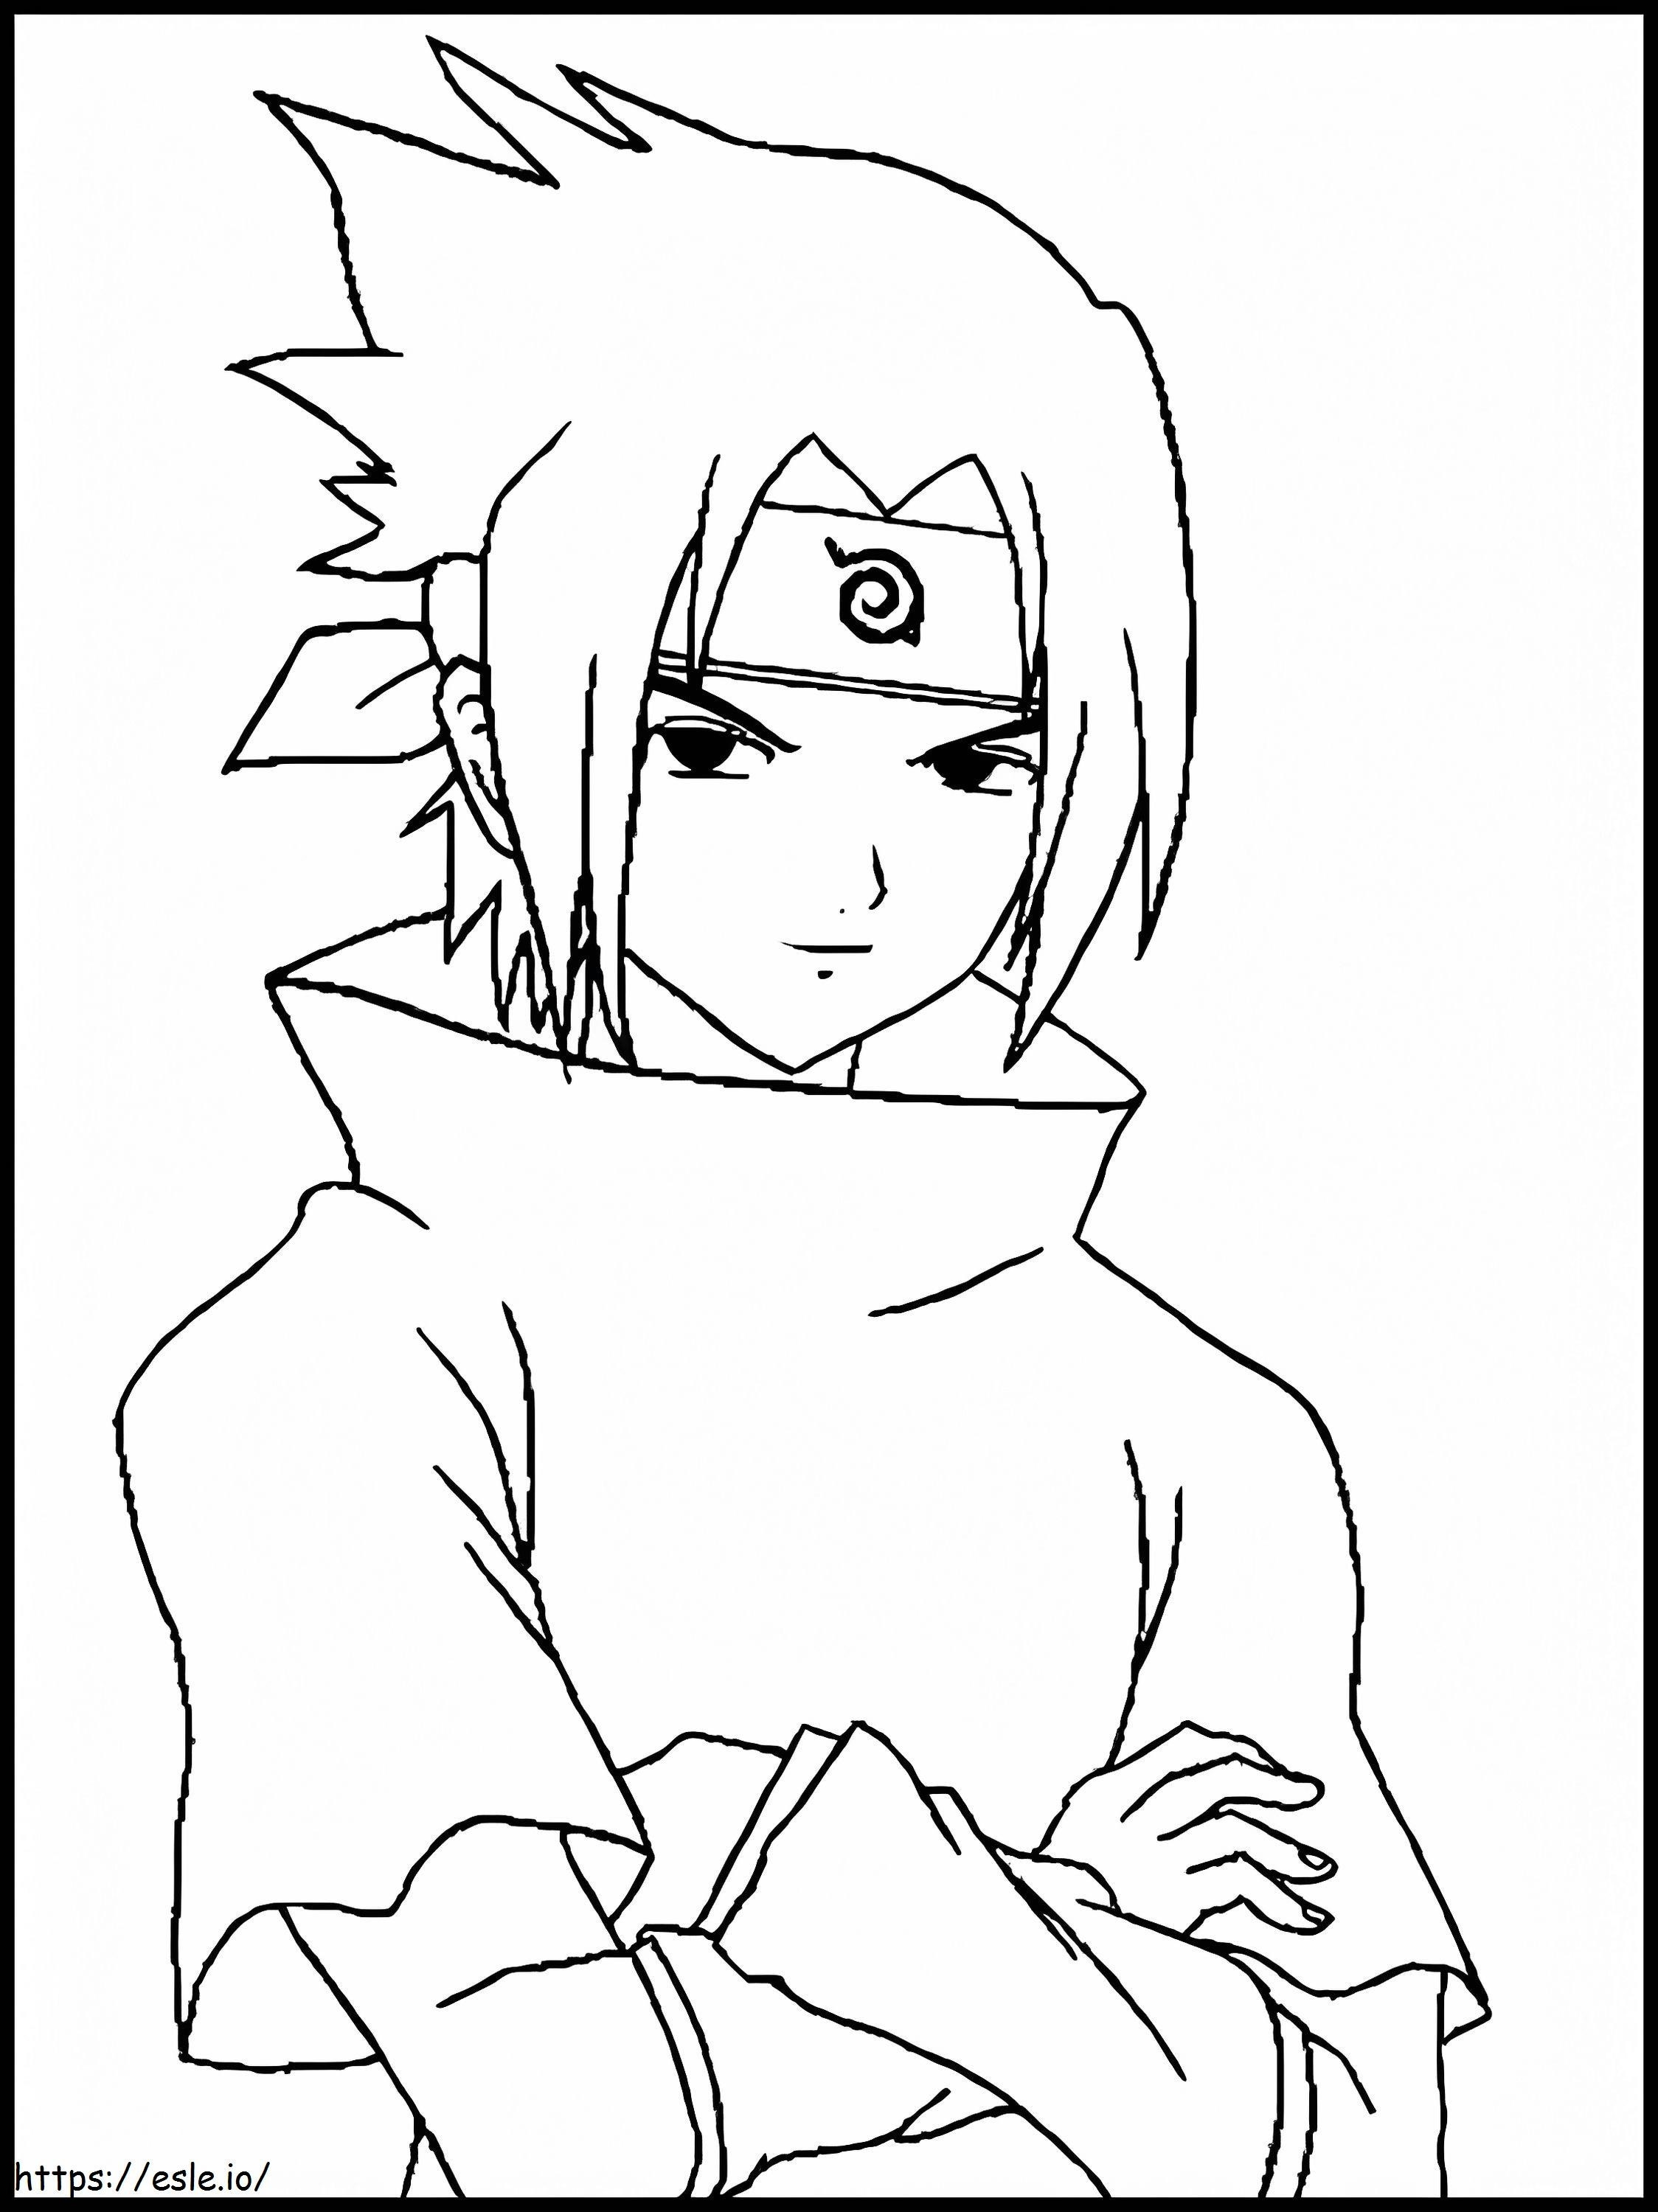 Young Sasuke coloring page